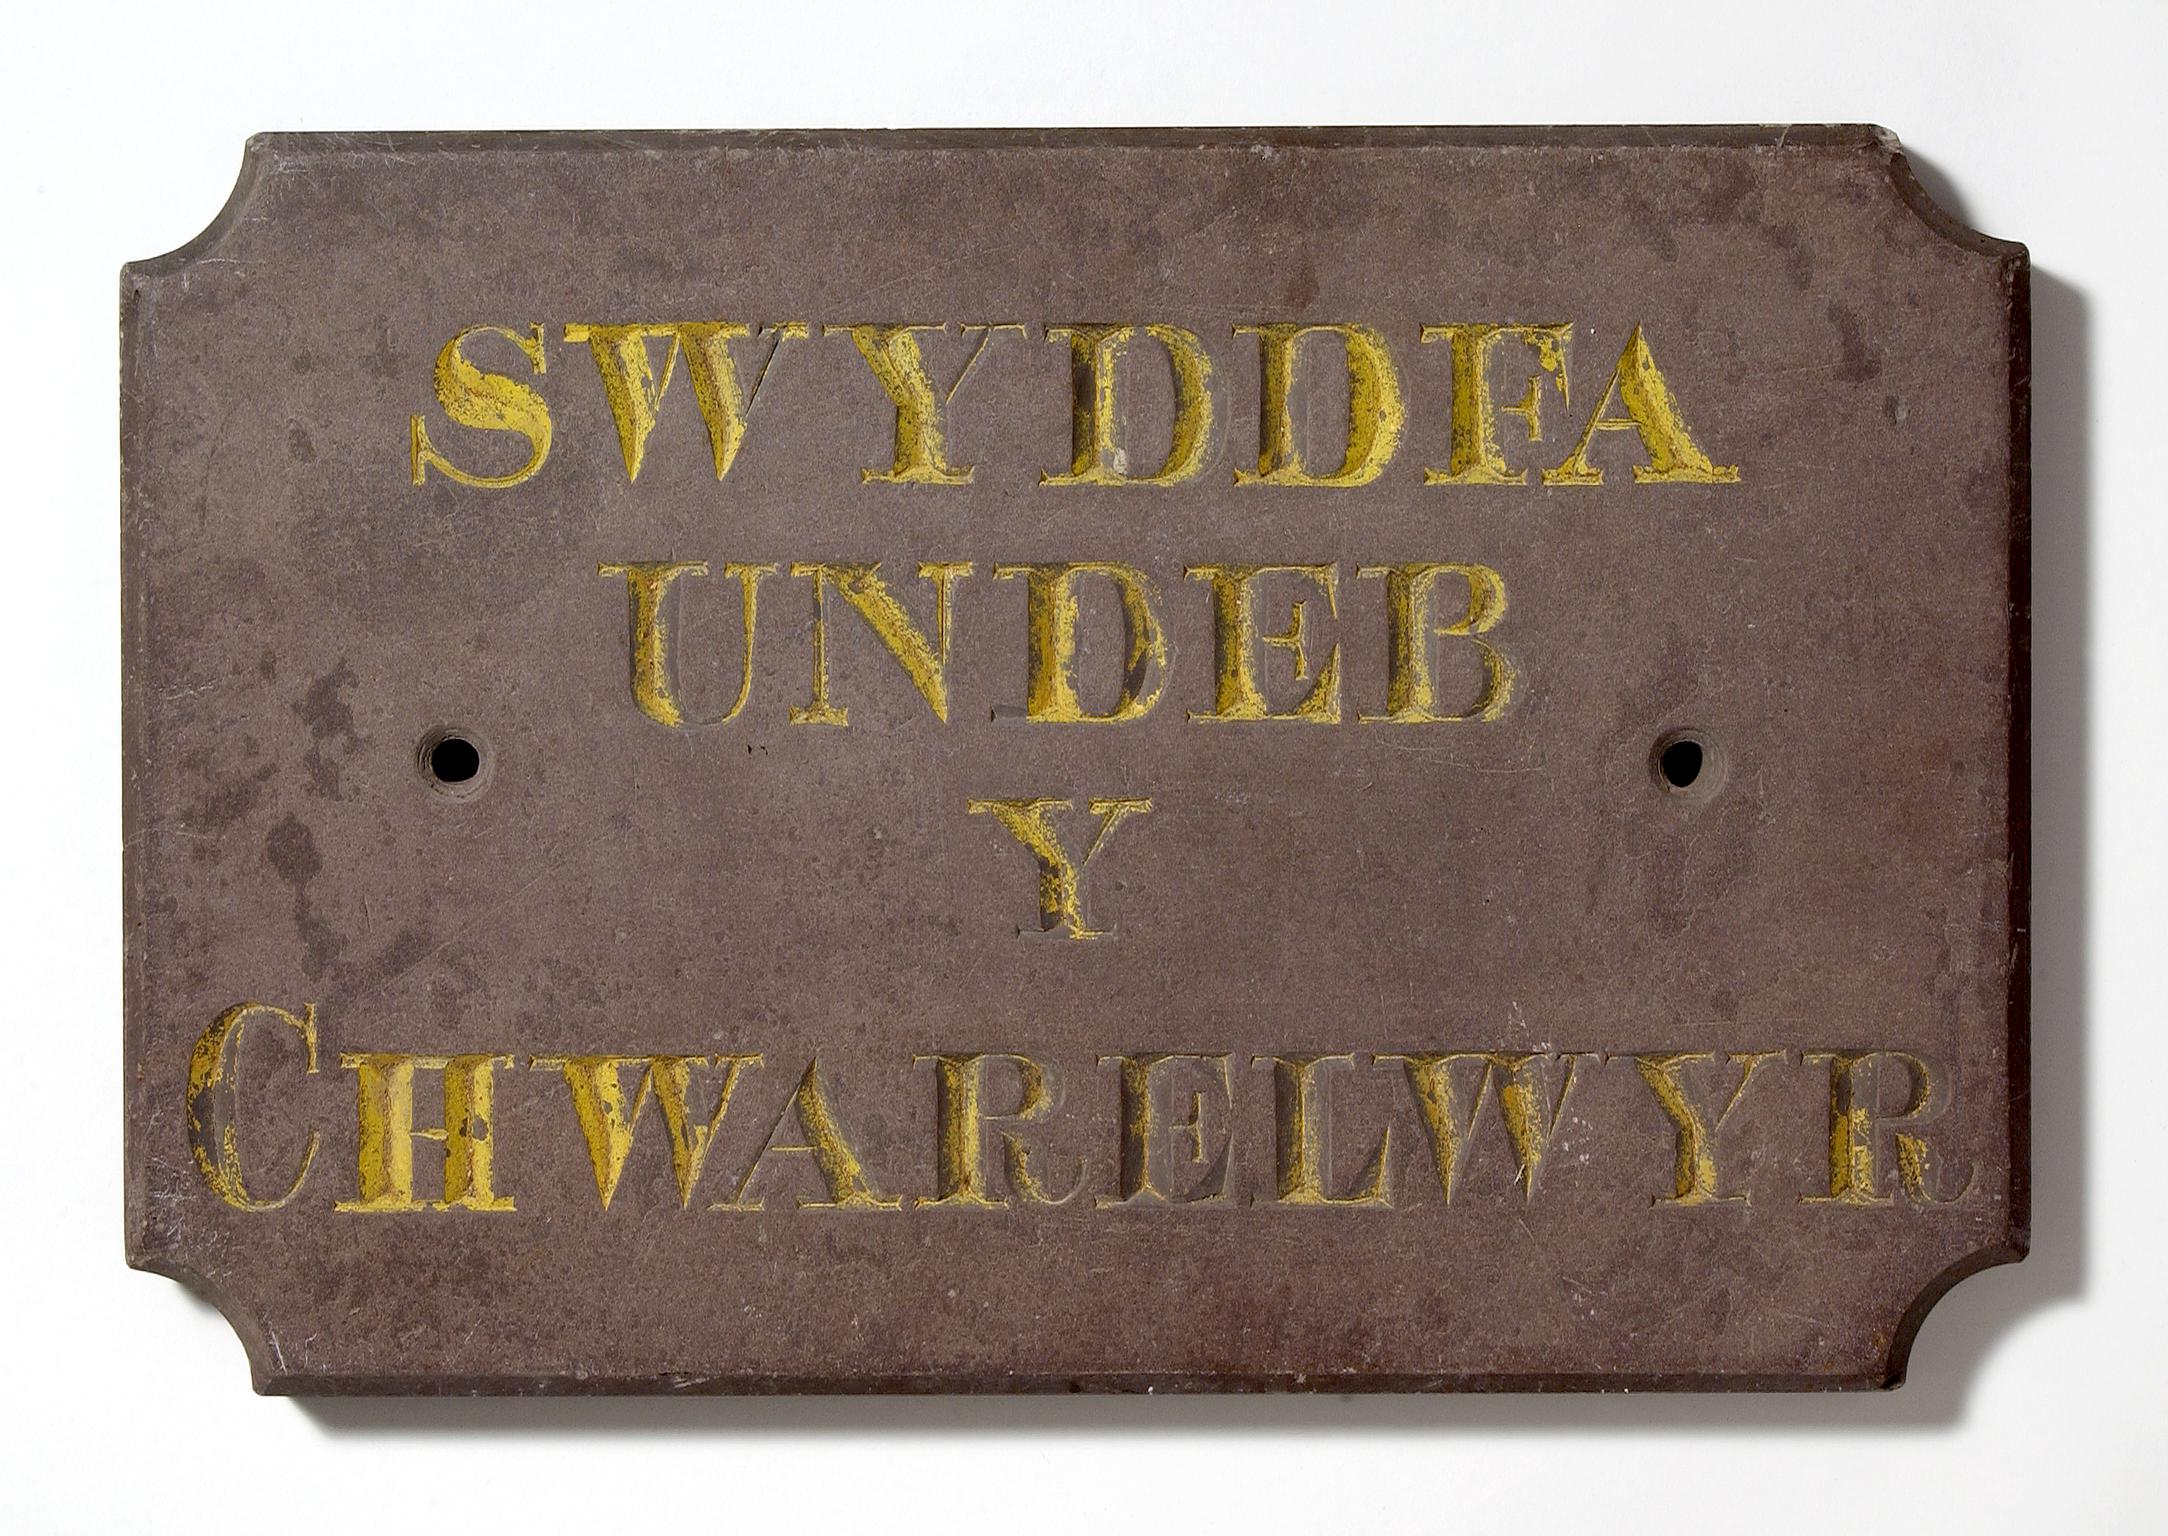 North Wales Quarrymen's Union, plaque